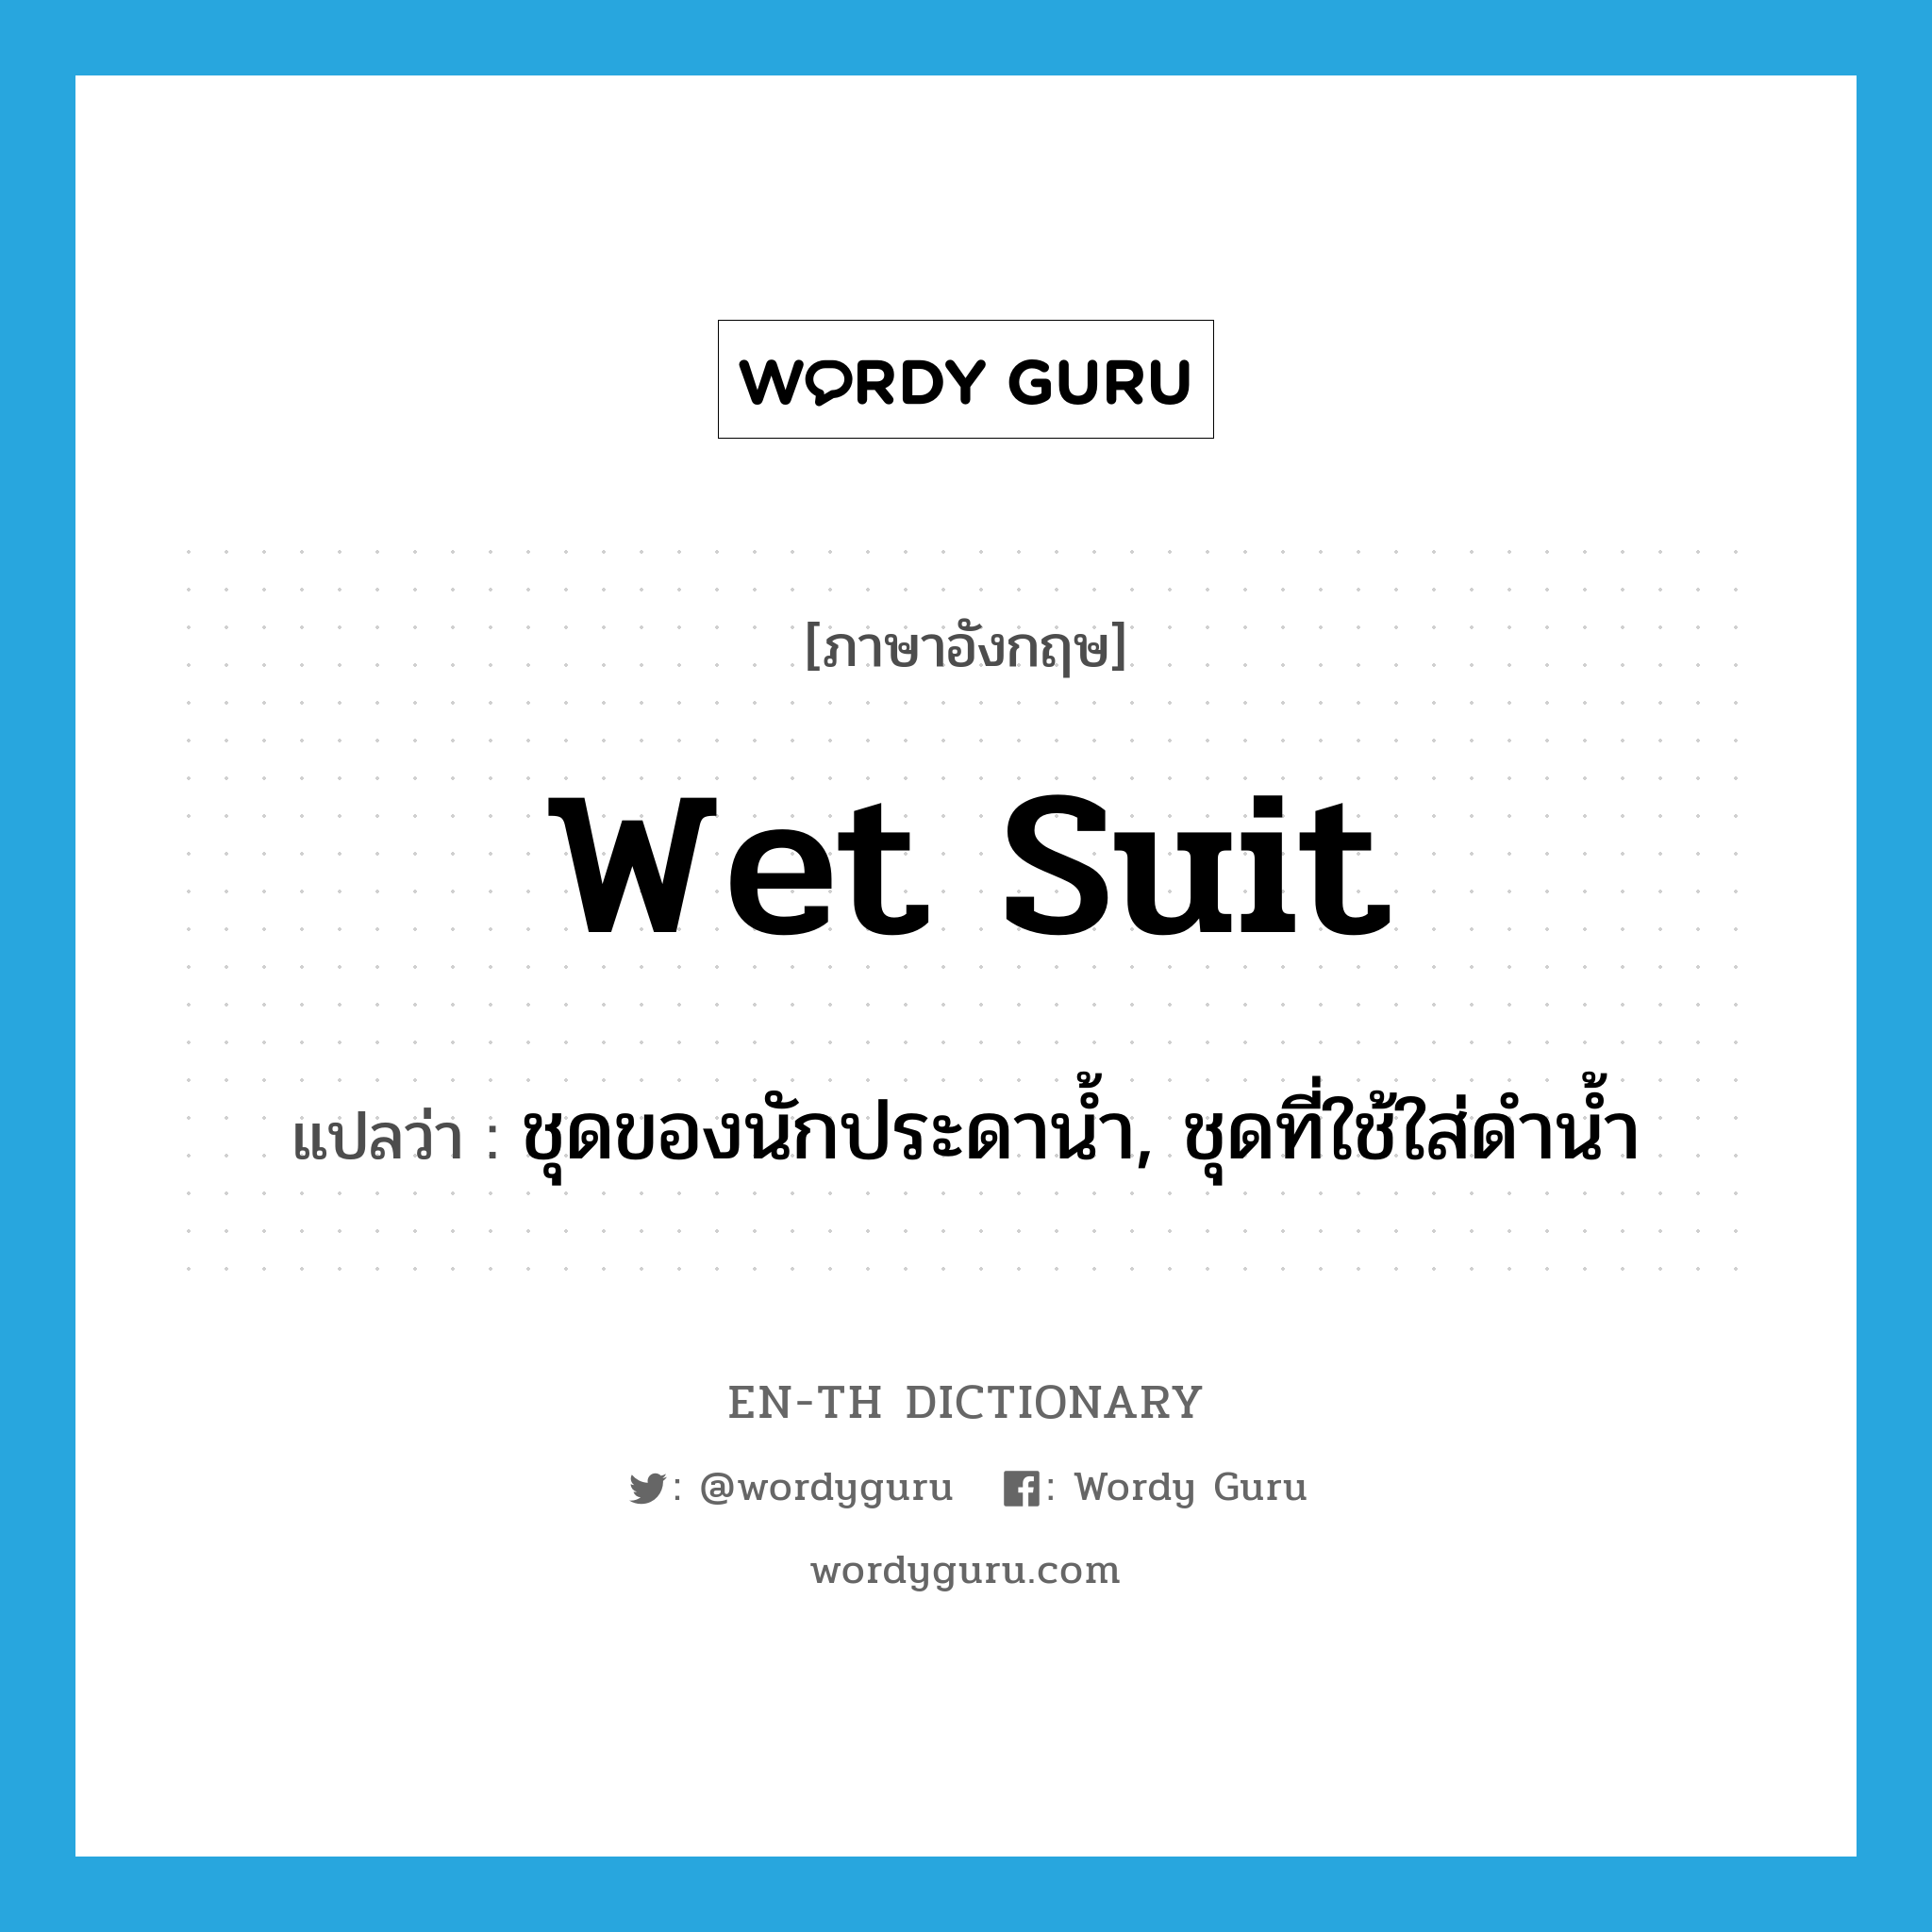 ชุดของนักประดาน้ำ, ชุดที่ใช้ใส่ดำน้ำ ภาษาอังกฤษ?, คำศัพท์ภาษาอังกฤษ ชุดของนักประดาน้ำ, ชุดที่ใช้ใส่ดำน้ำ แปลว่า wet suit ประเภท N หมวด N